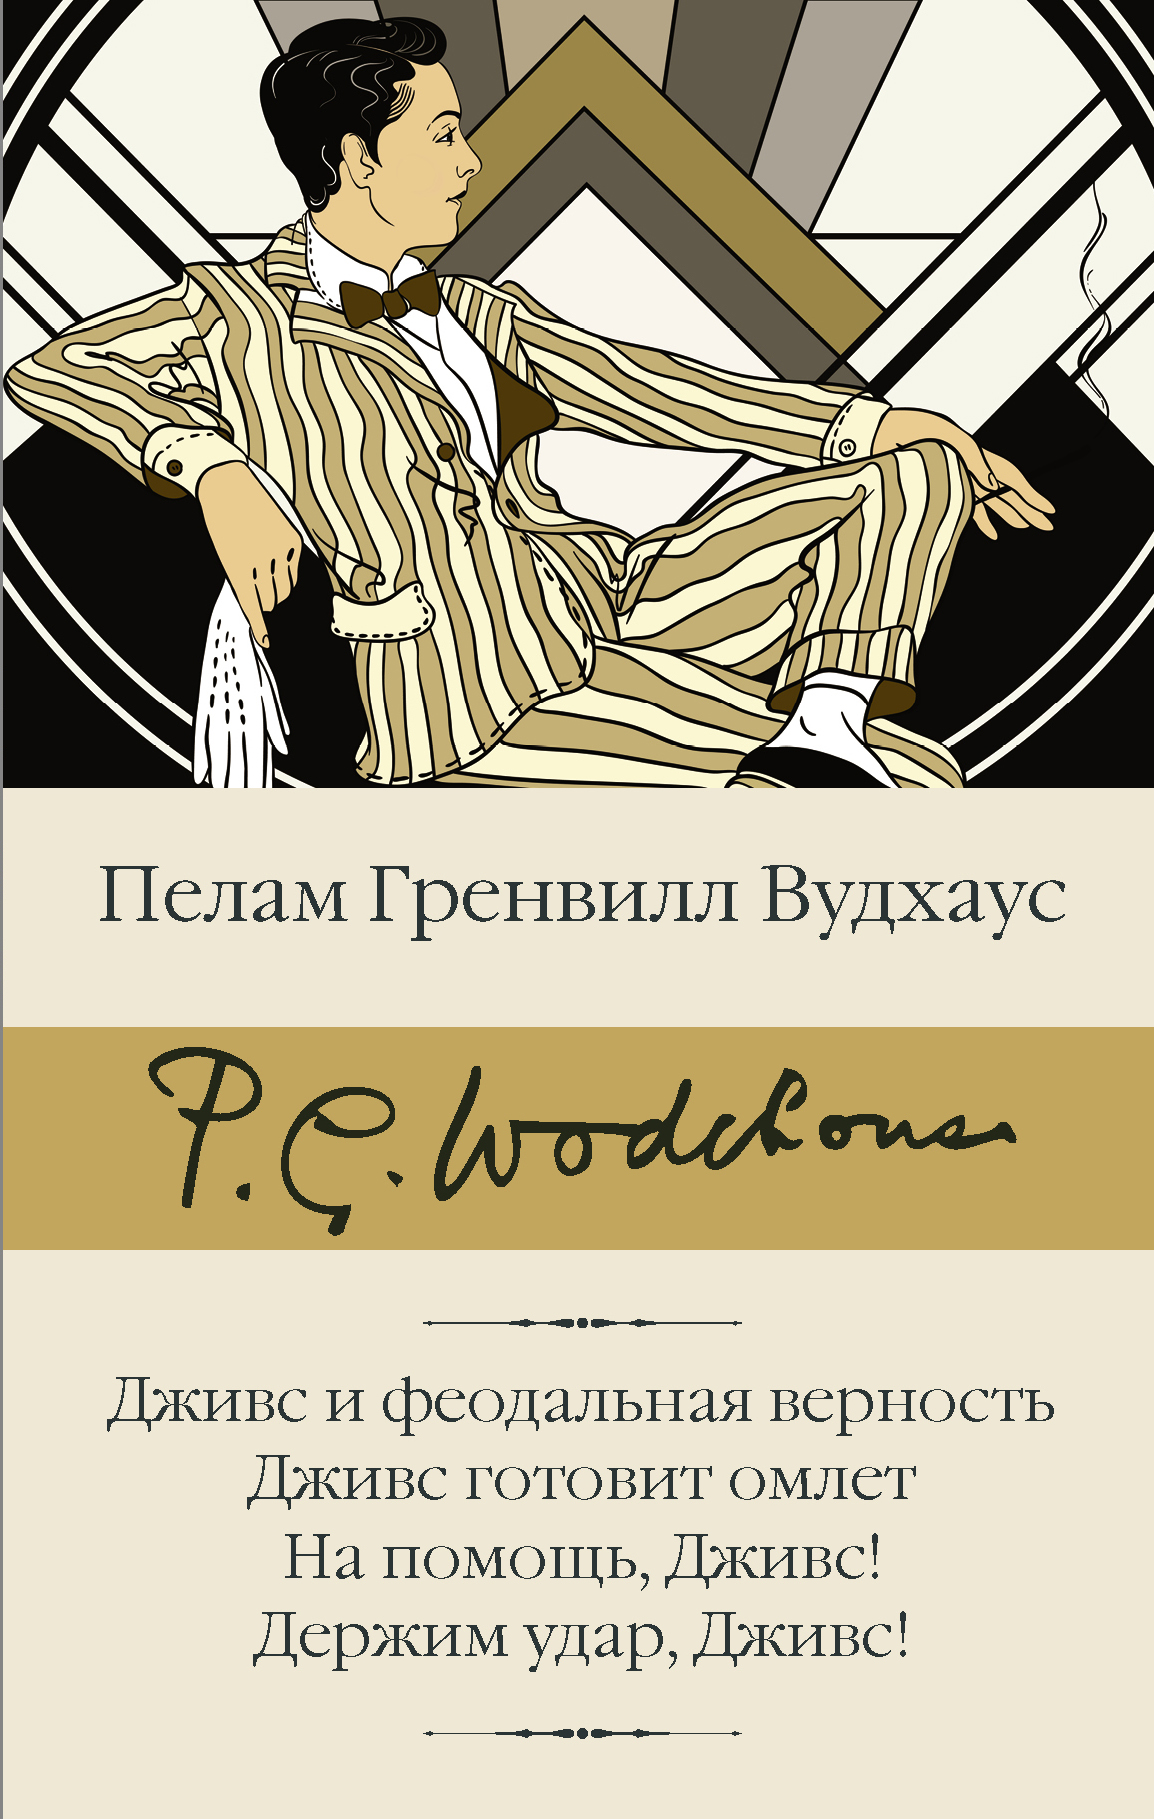 Собрание сочинений П. Вудхауса в 4 томах